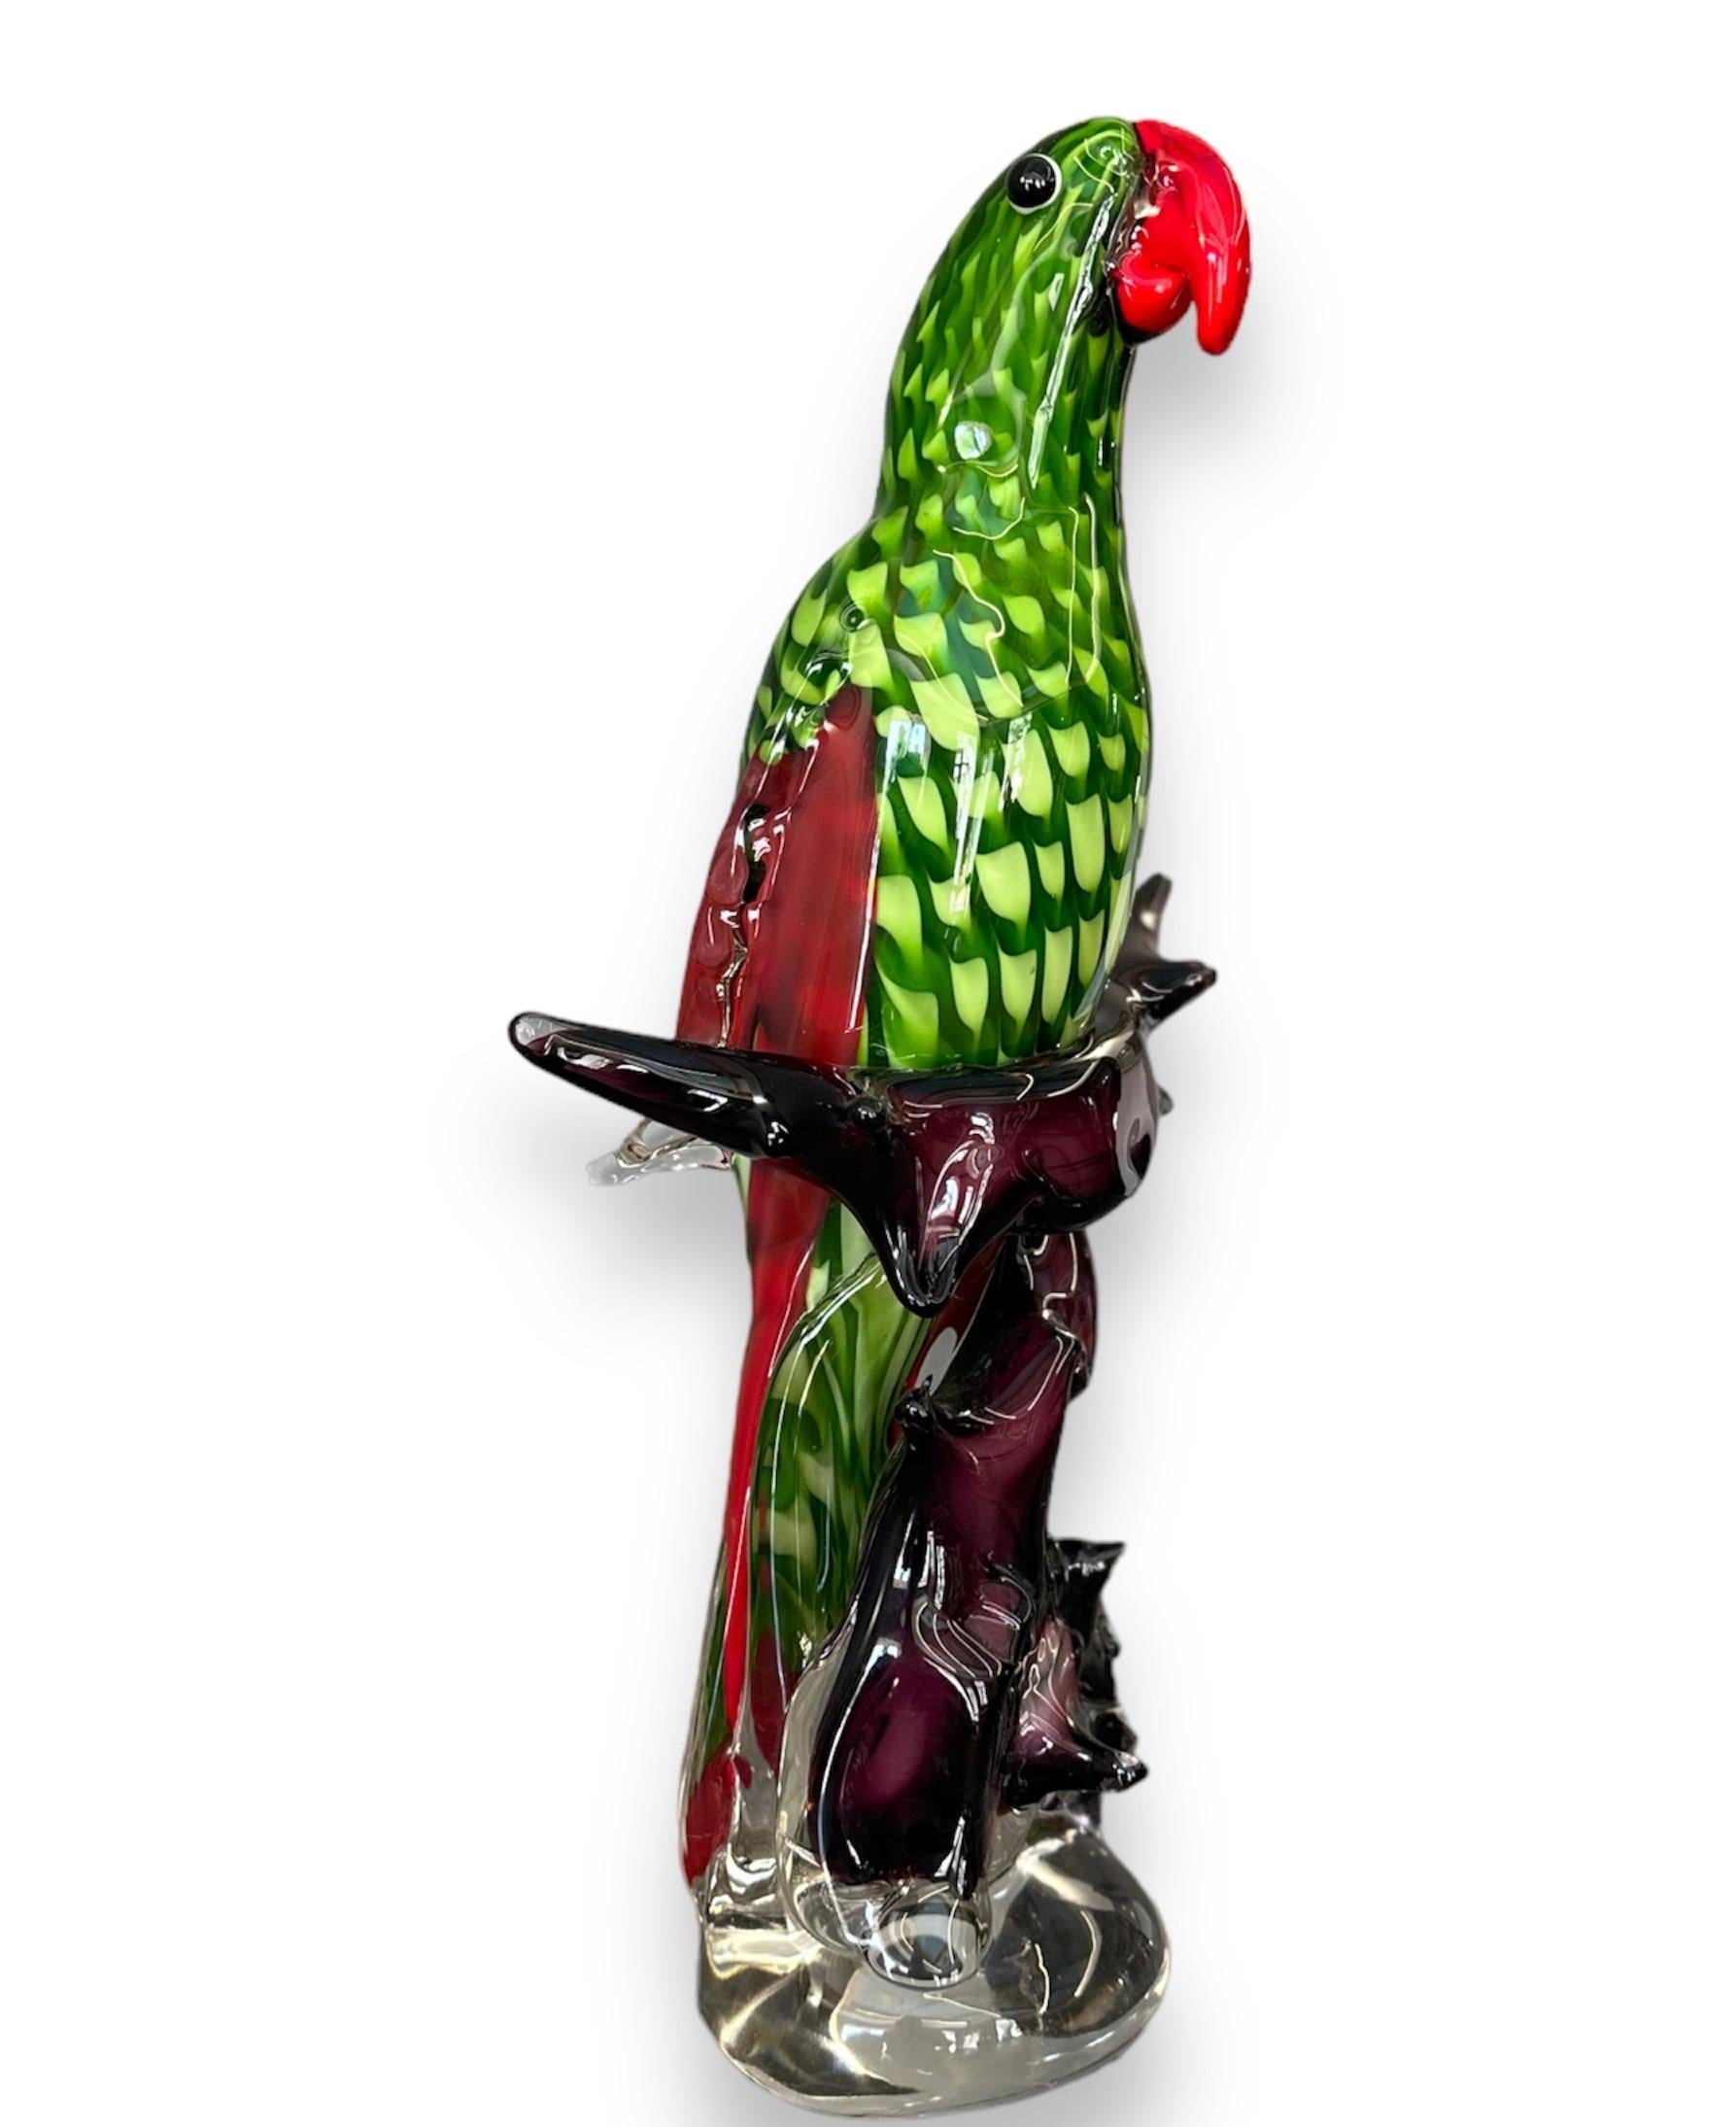 Sculpture en verre de Murano représentant un perroquet.

Italie - Années 1970

Dimensions : H 50 